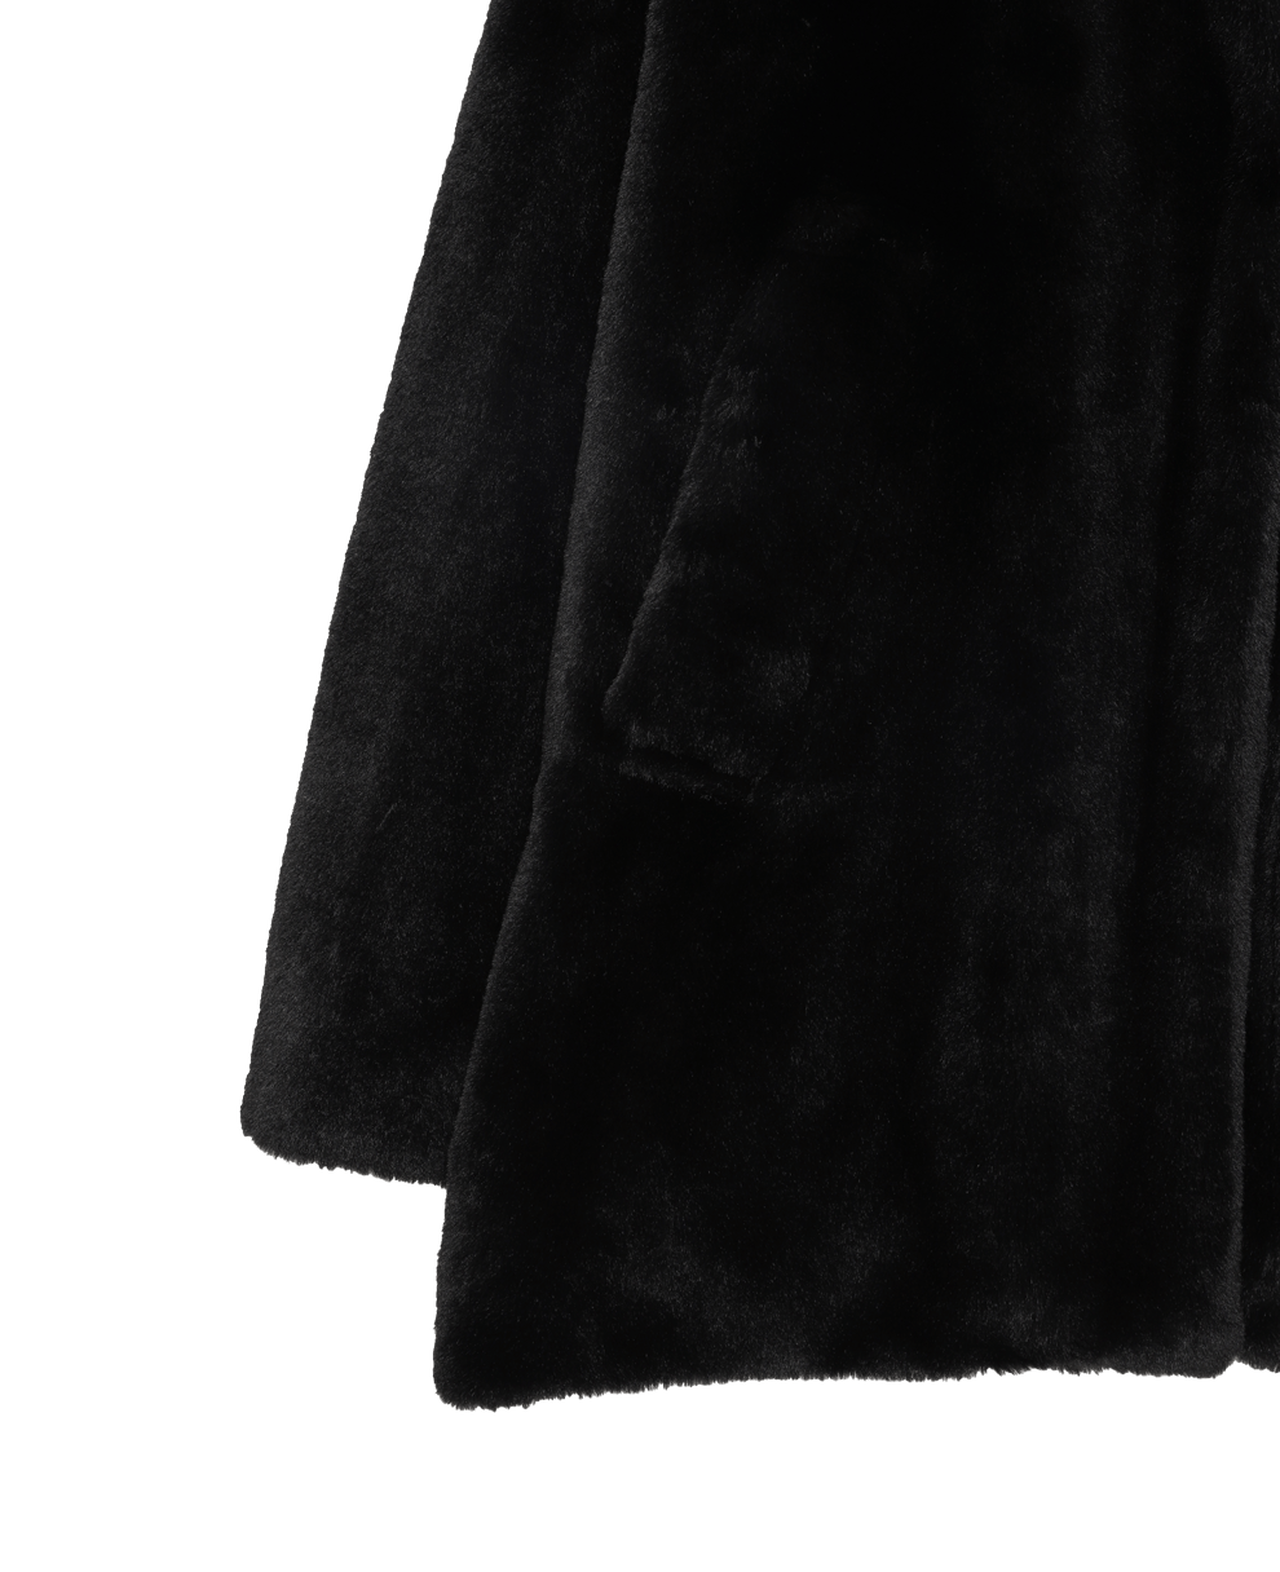 NINO Women's Jacket,BLACK, large image number 3